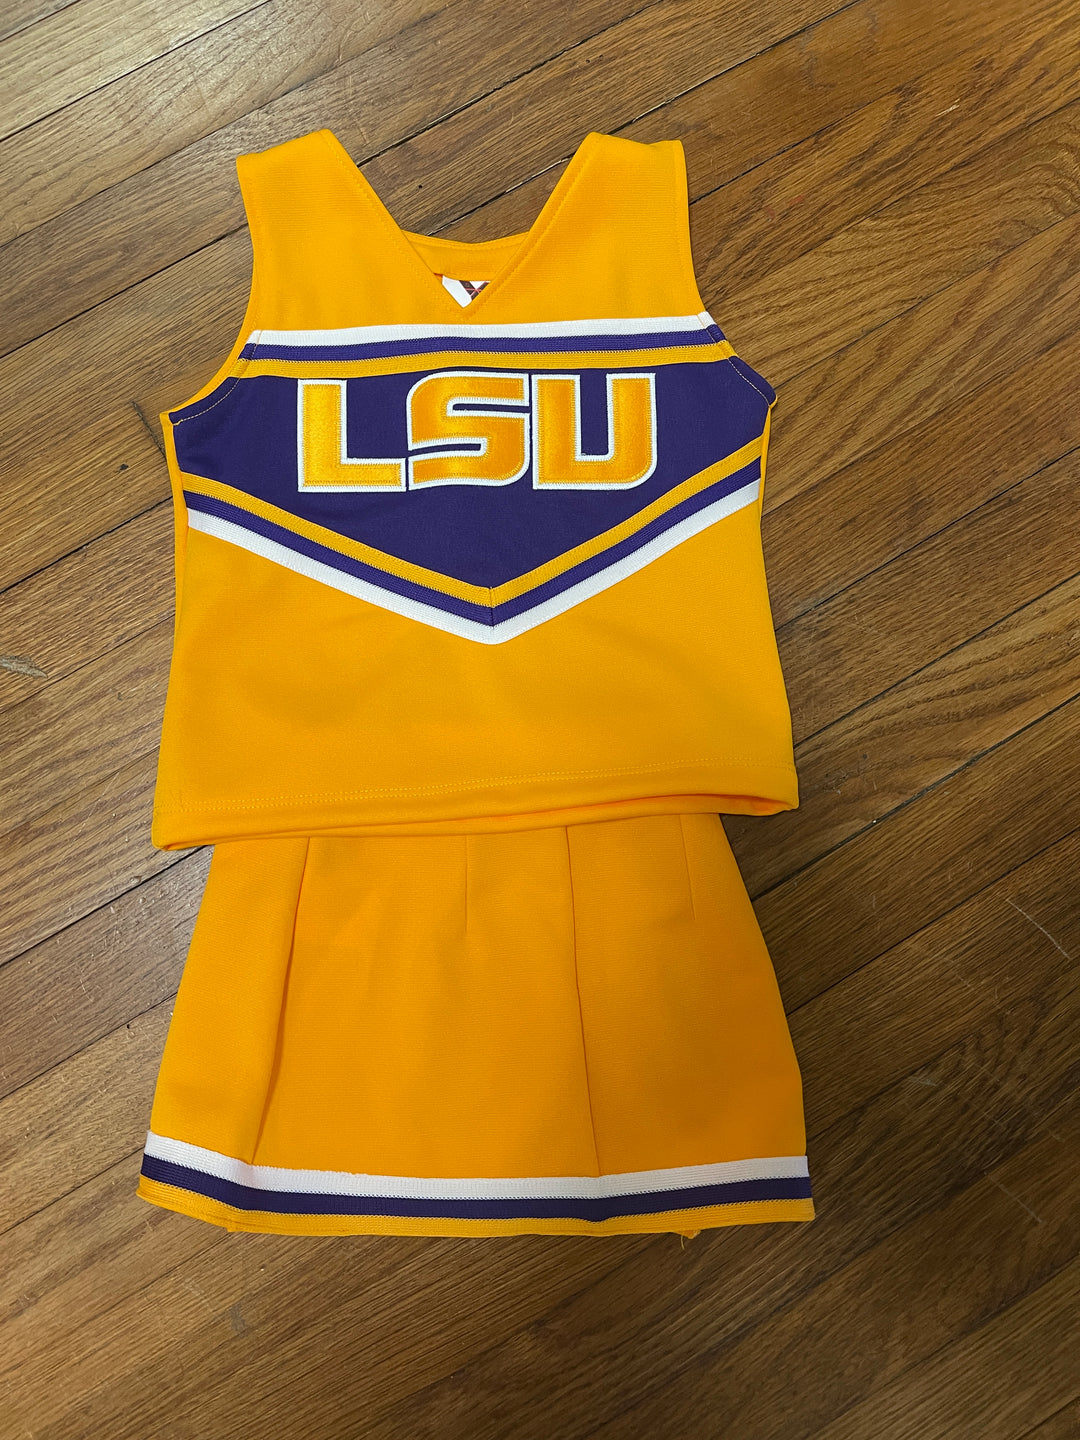 GOLD LSU Cheerleader Two Piece Uniform